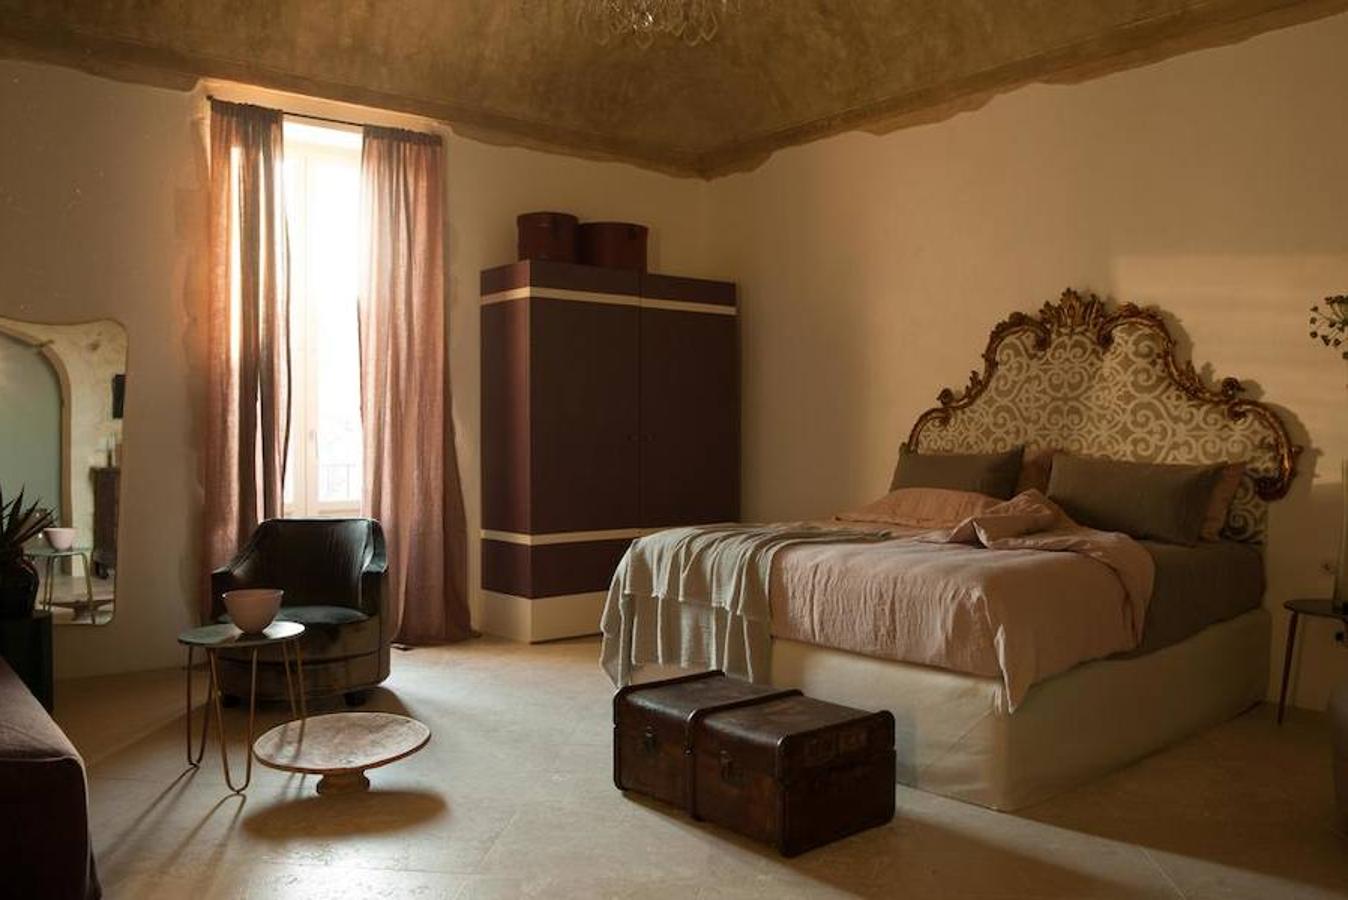 Así es el hotel Dimora delle Balze. Cada habitación lleva el nombre de una obra de arte, película, literatura o música de un artista siciliano, y todas están decoradas al estilo local